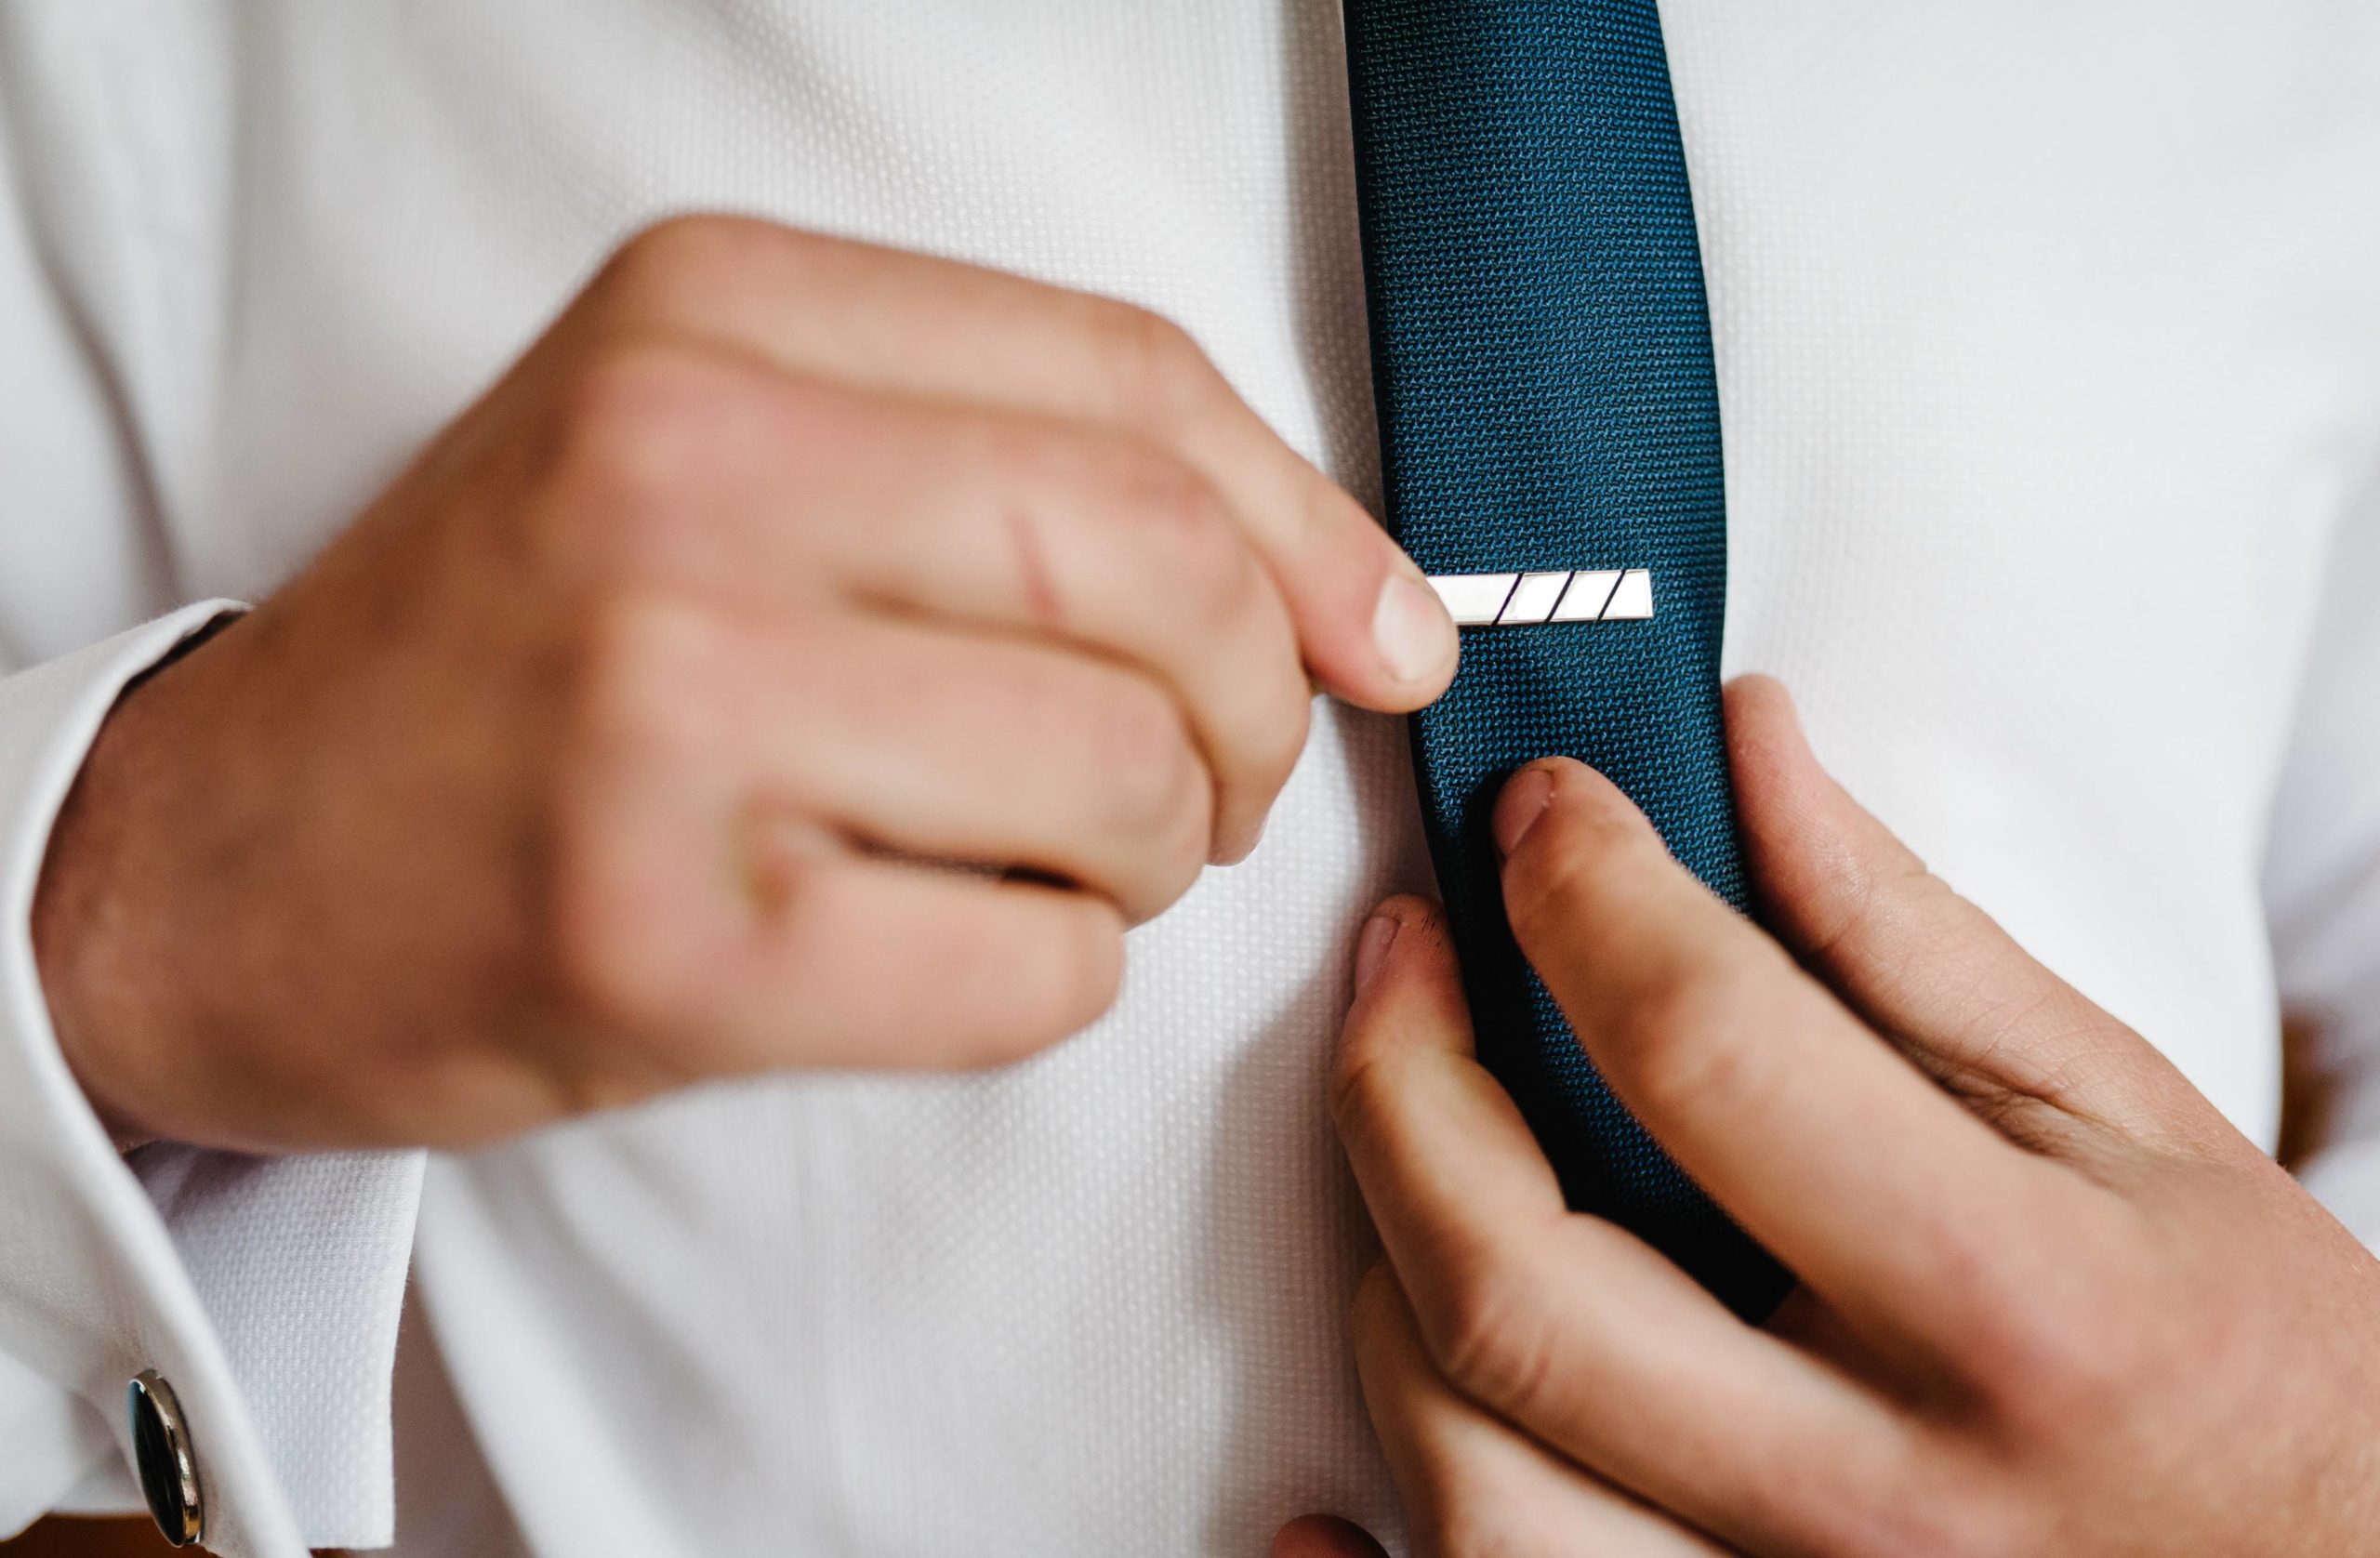 Spinki do krawata — wszystko, co powinieneś o nich wiedzieć